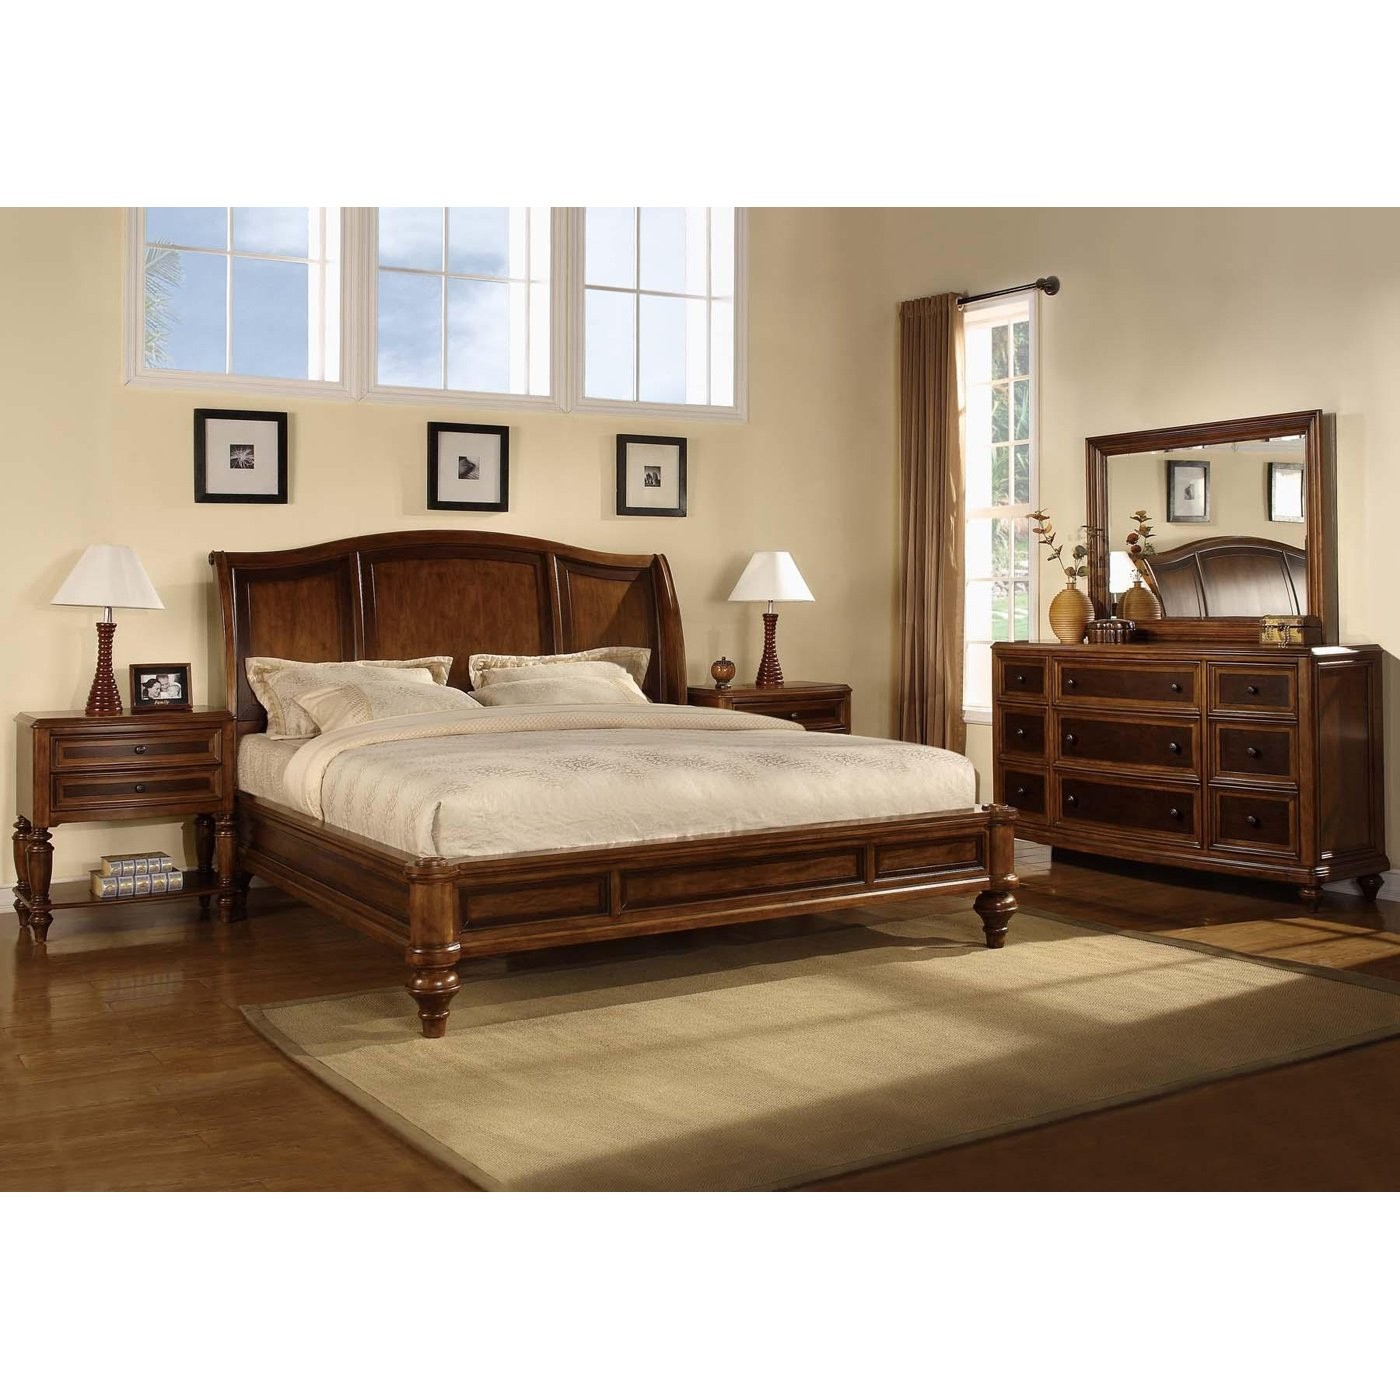 bedroom furniture sets king size bed photo - 9